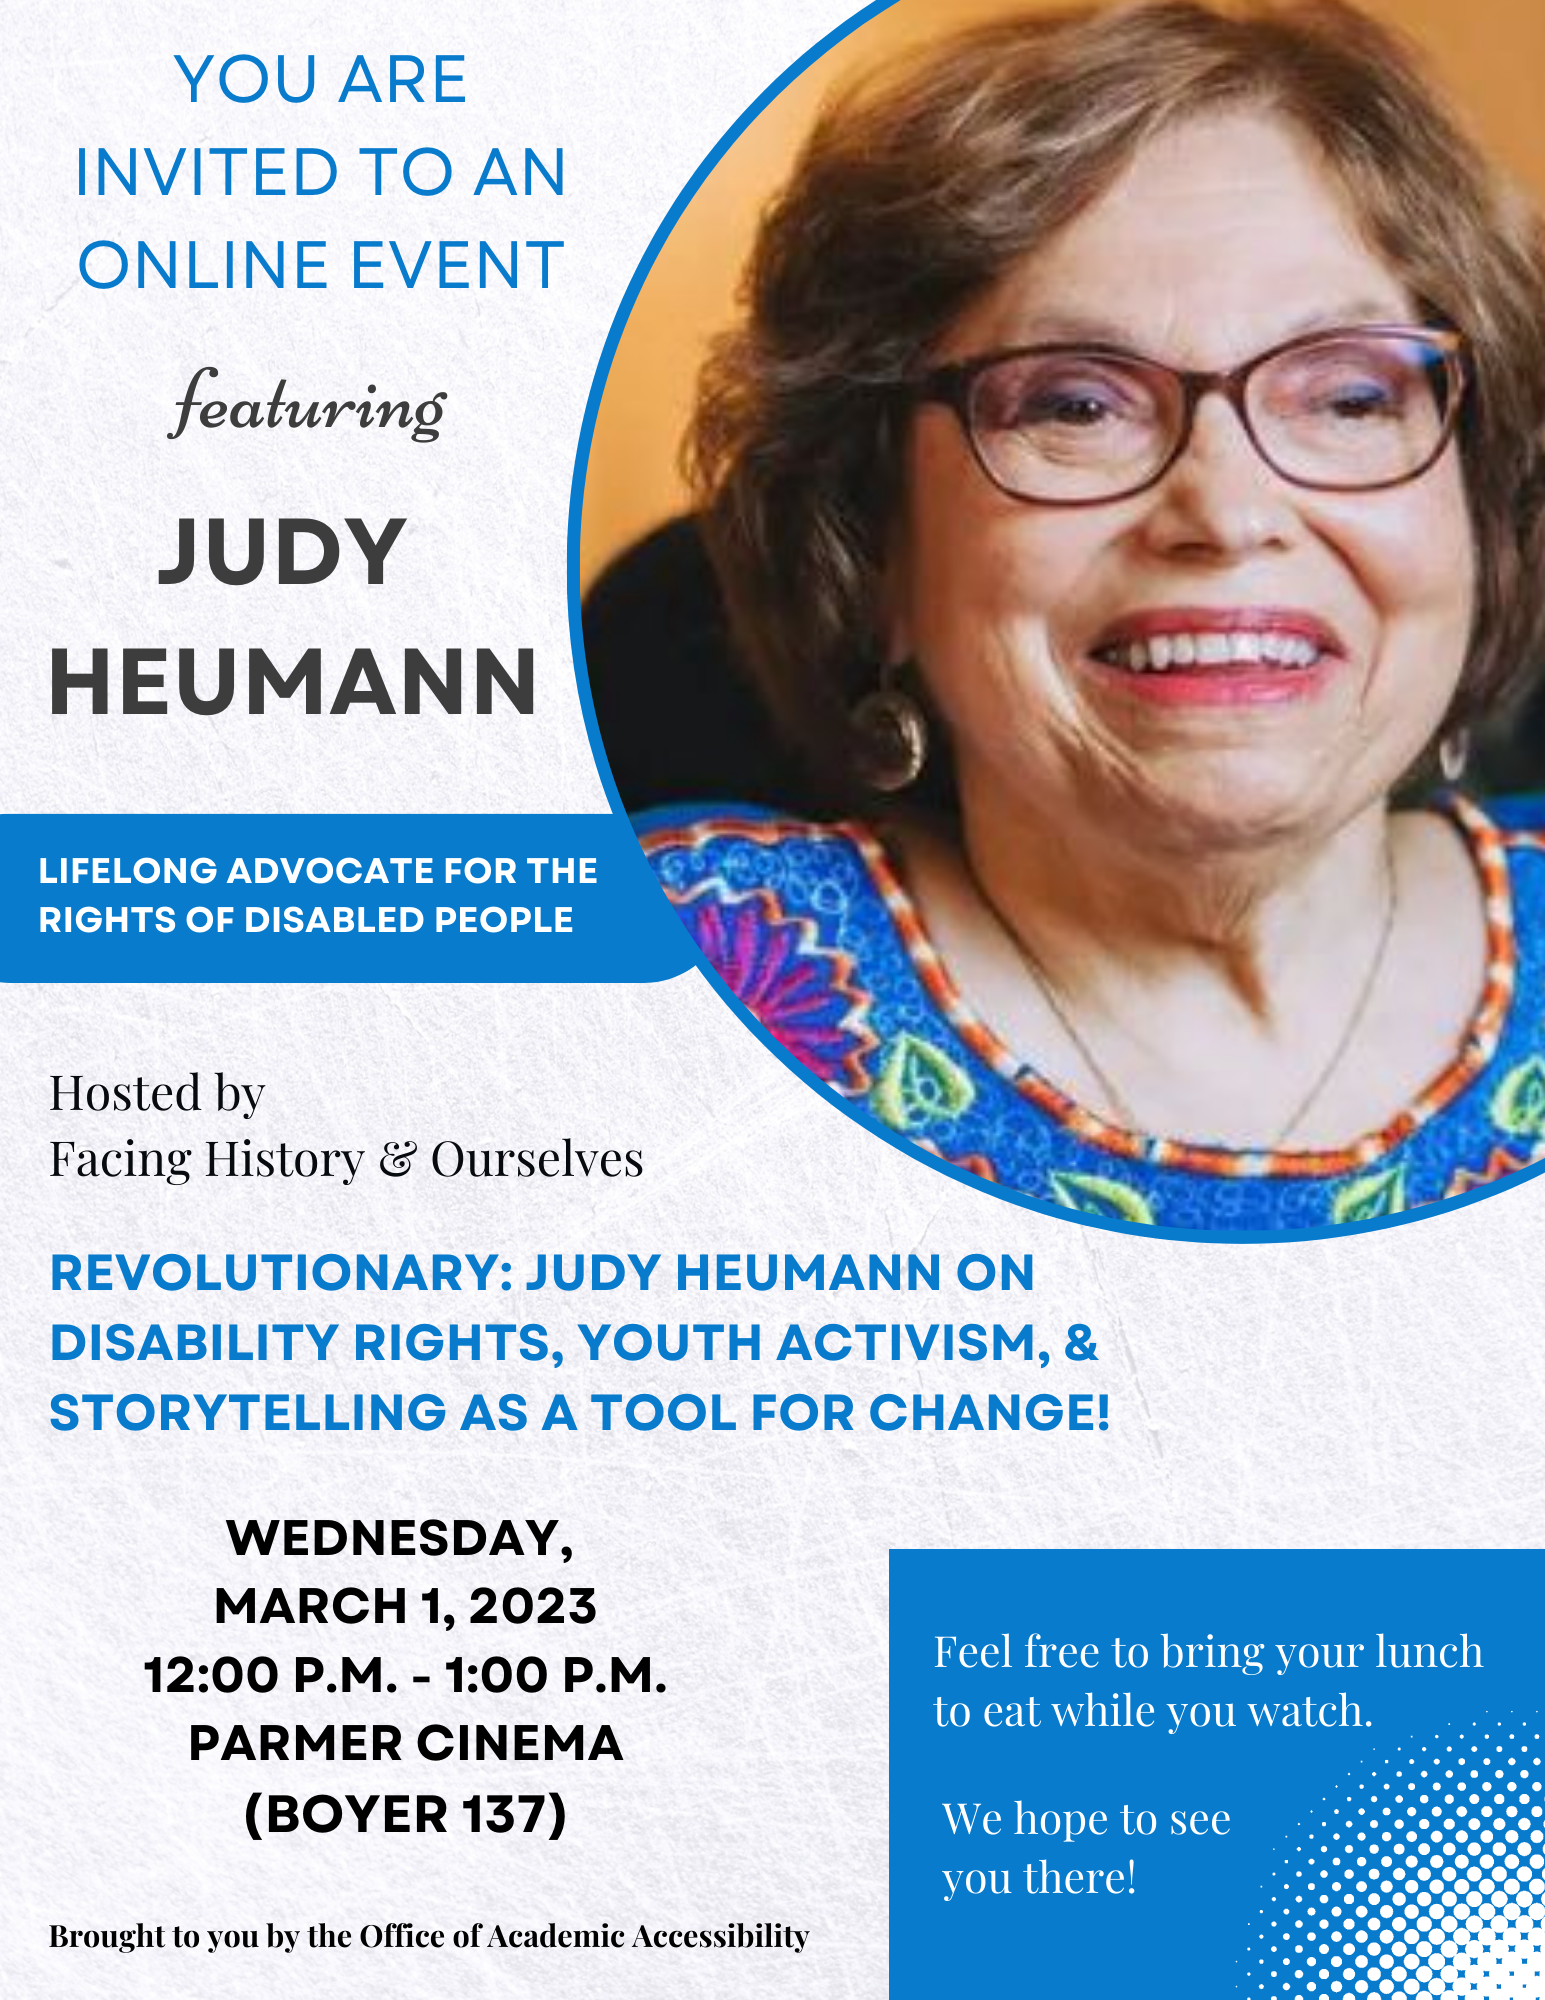 Judy heumann advertisement